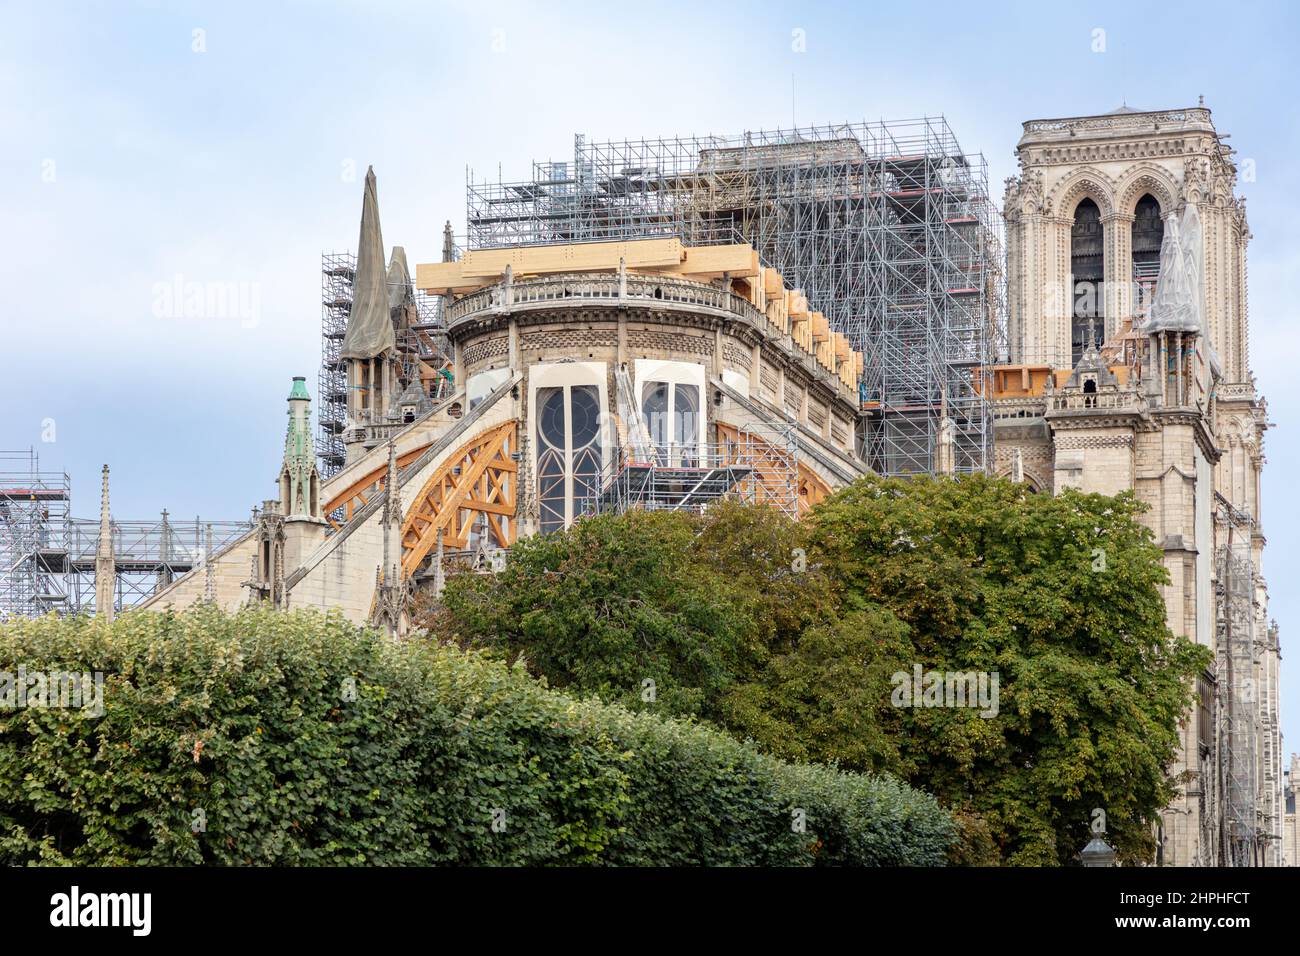 Travaux de réparation de la cathédrale notre-Dame endommagée par un incendie - 1 septembre 2019, Paris, Ile-de-France, France Banque D'Images